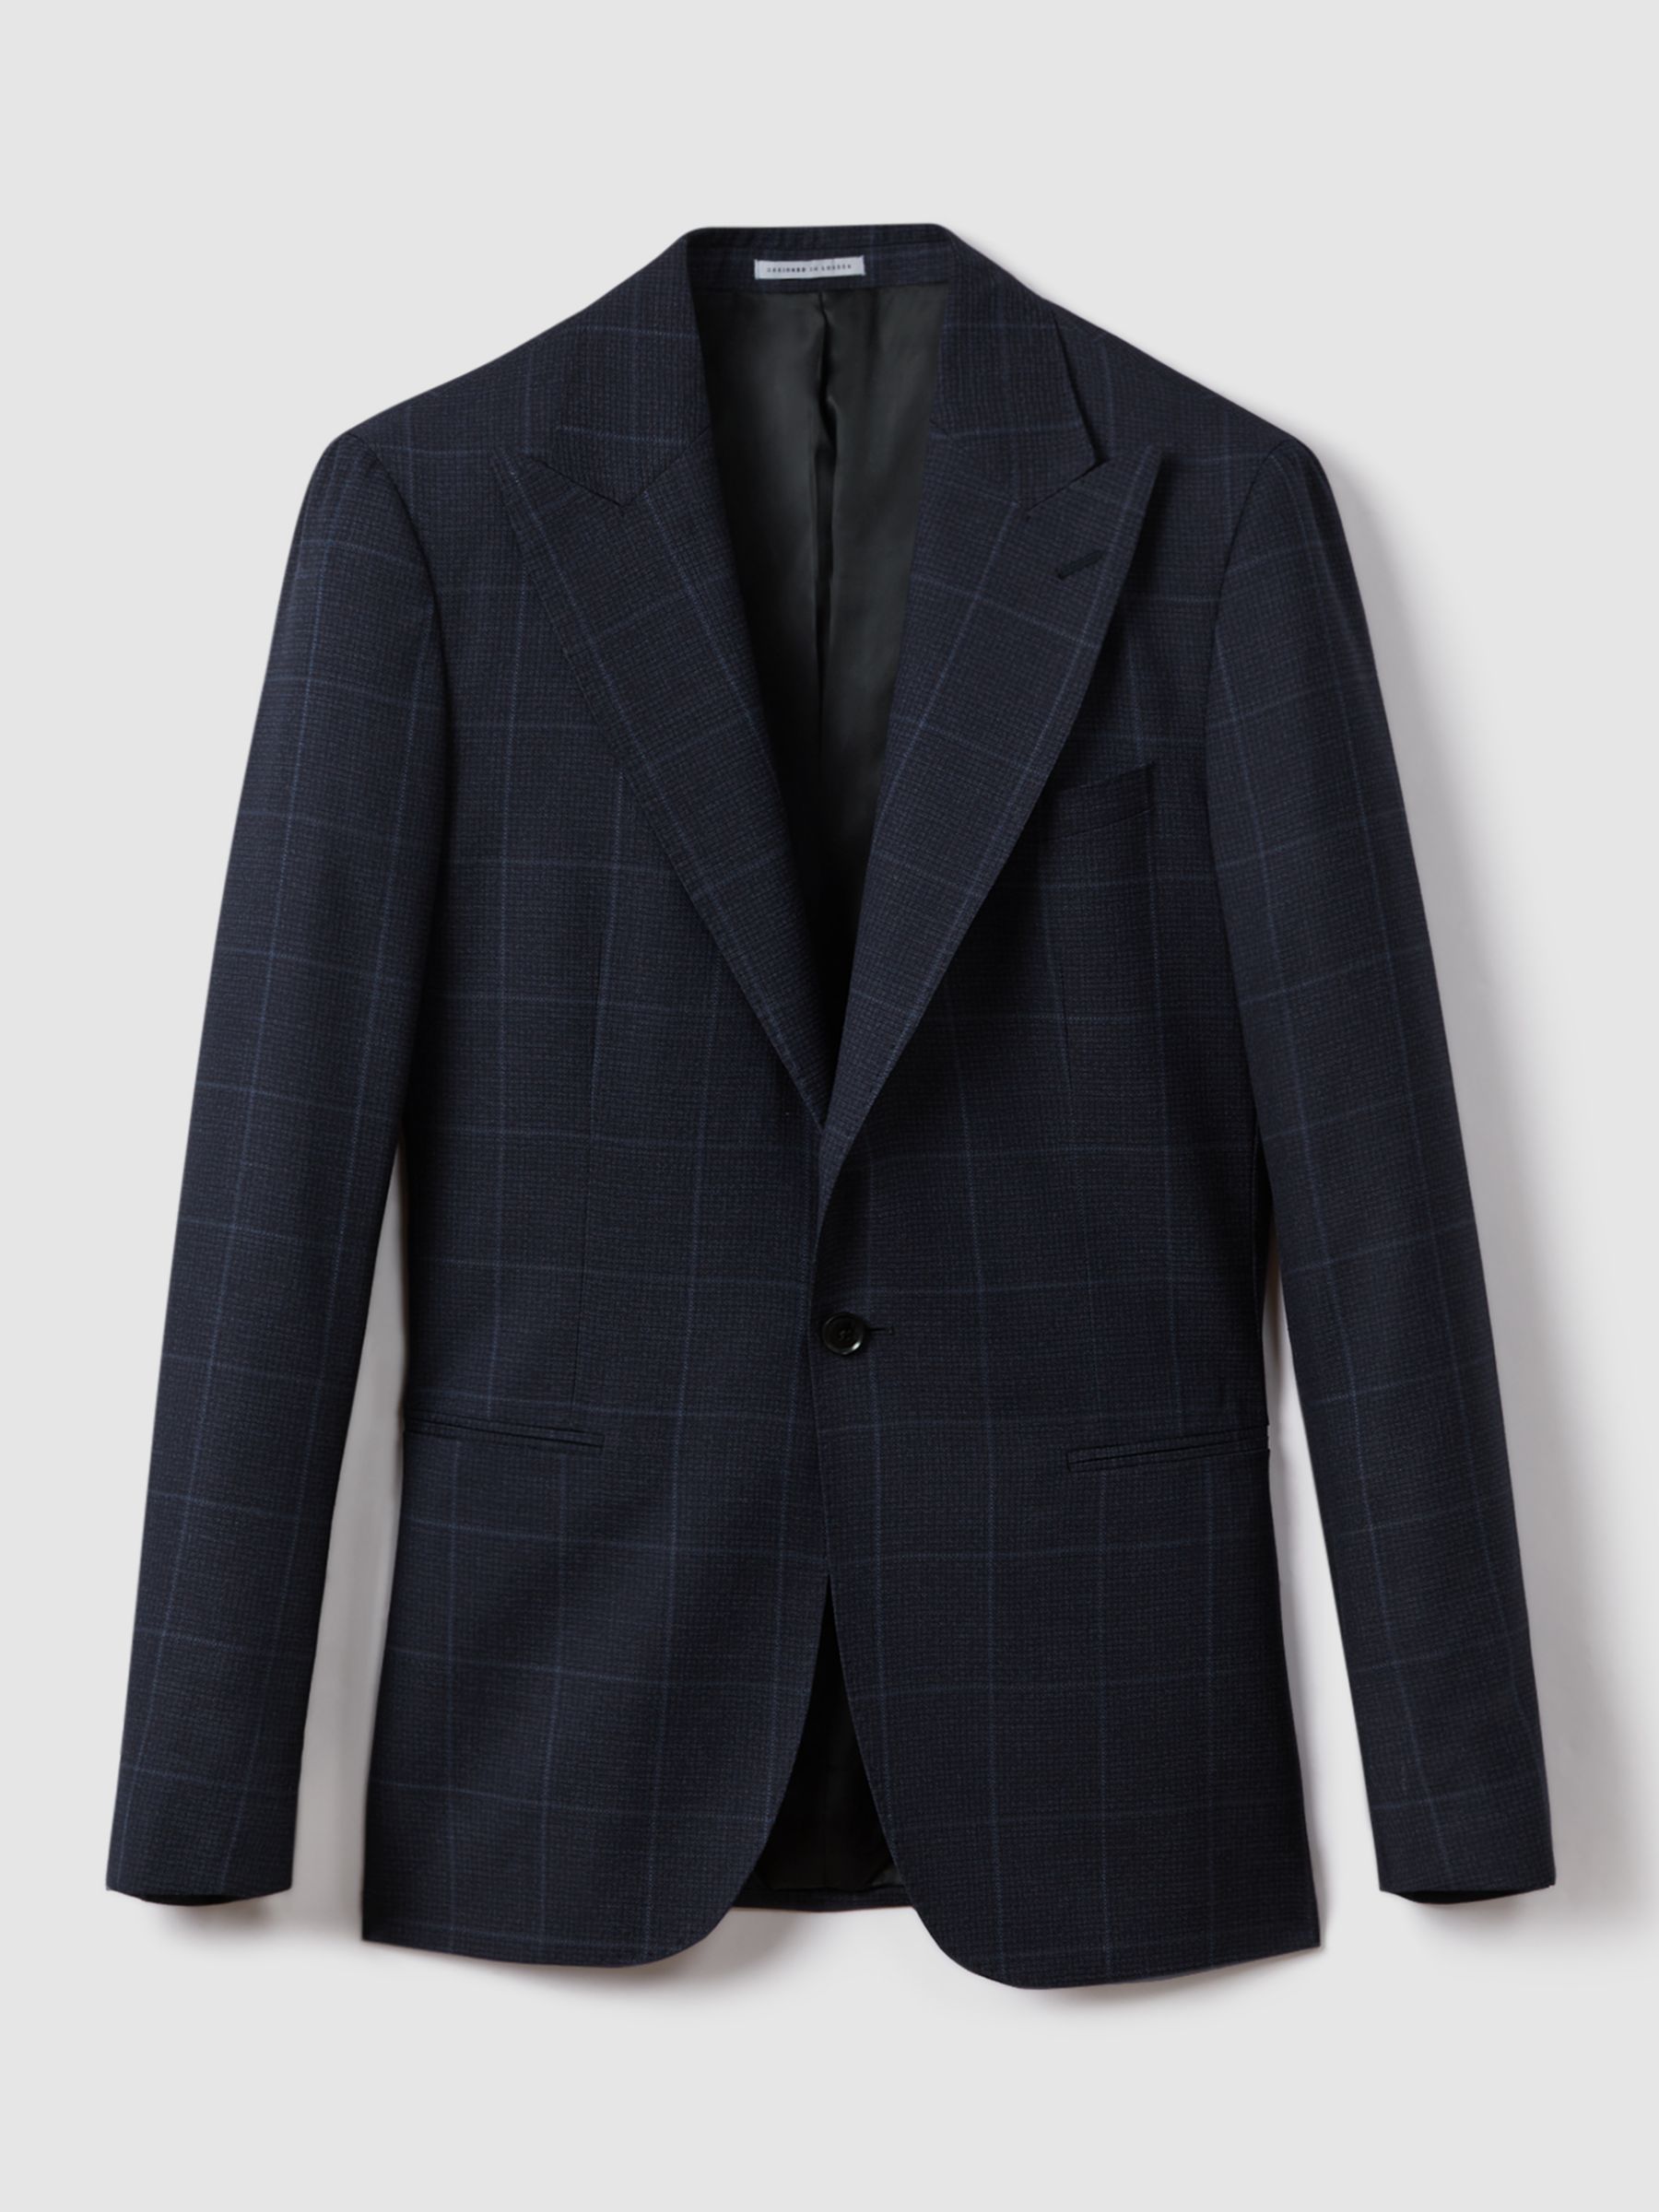 Reiss Klink Check Wool Suit Jacket, Navy, 36